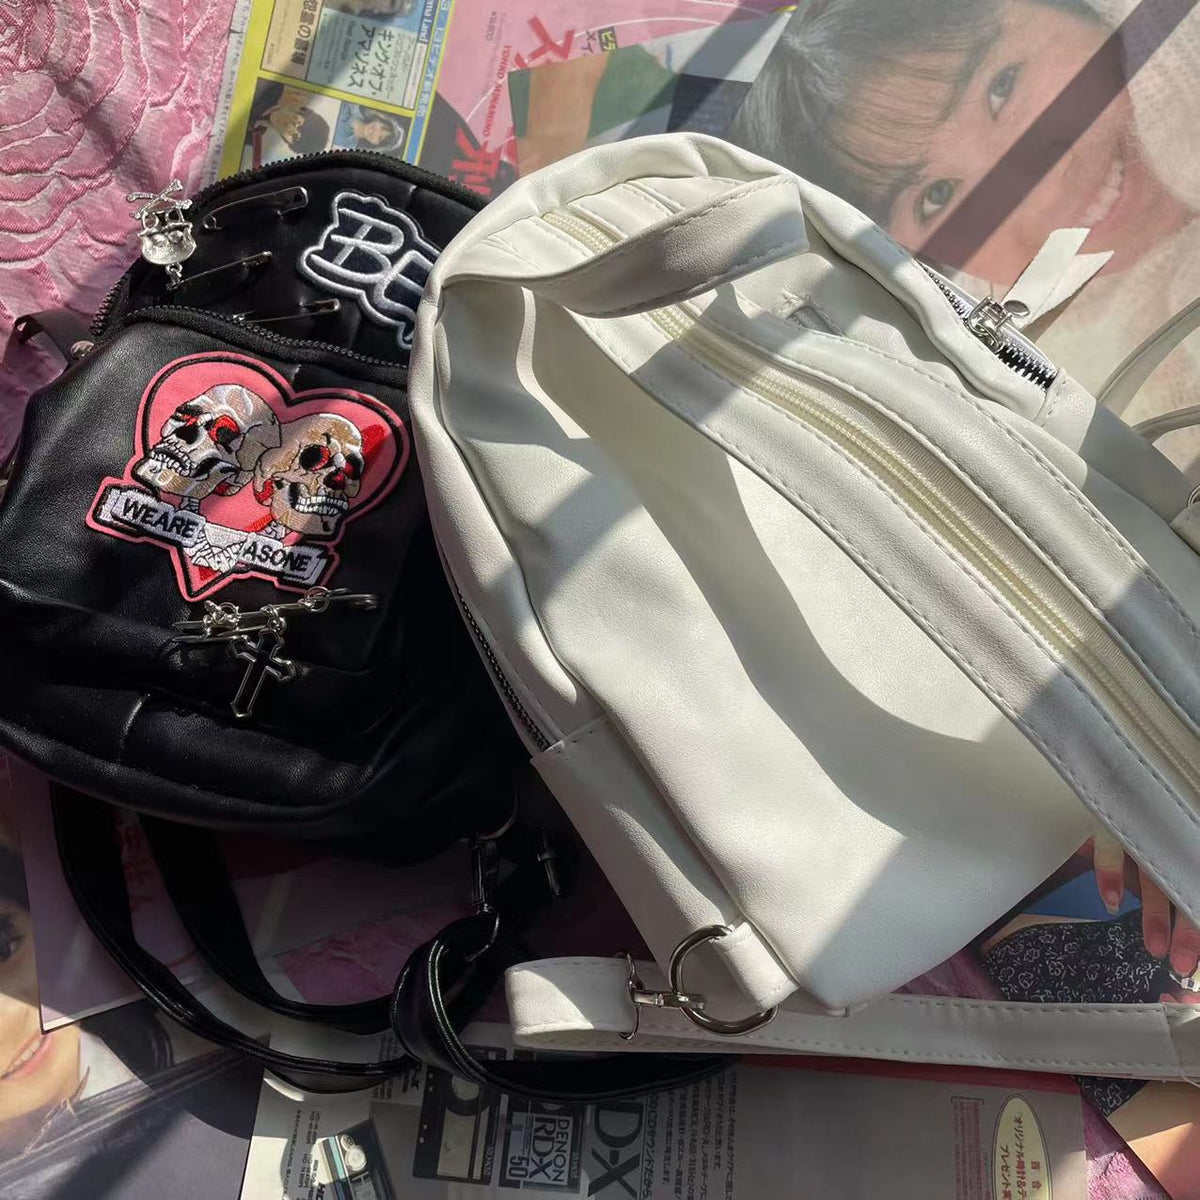 Love Skull Backpack DB7738